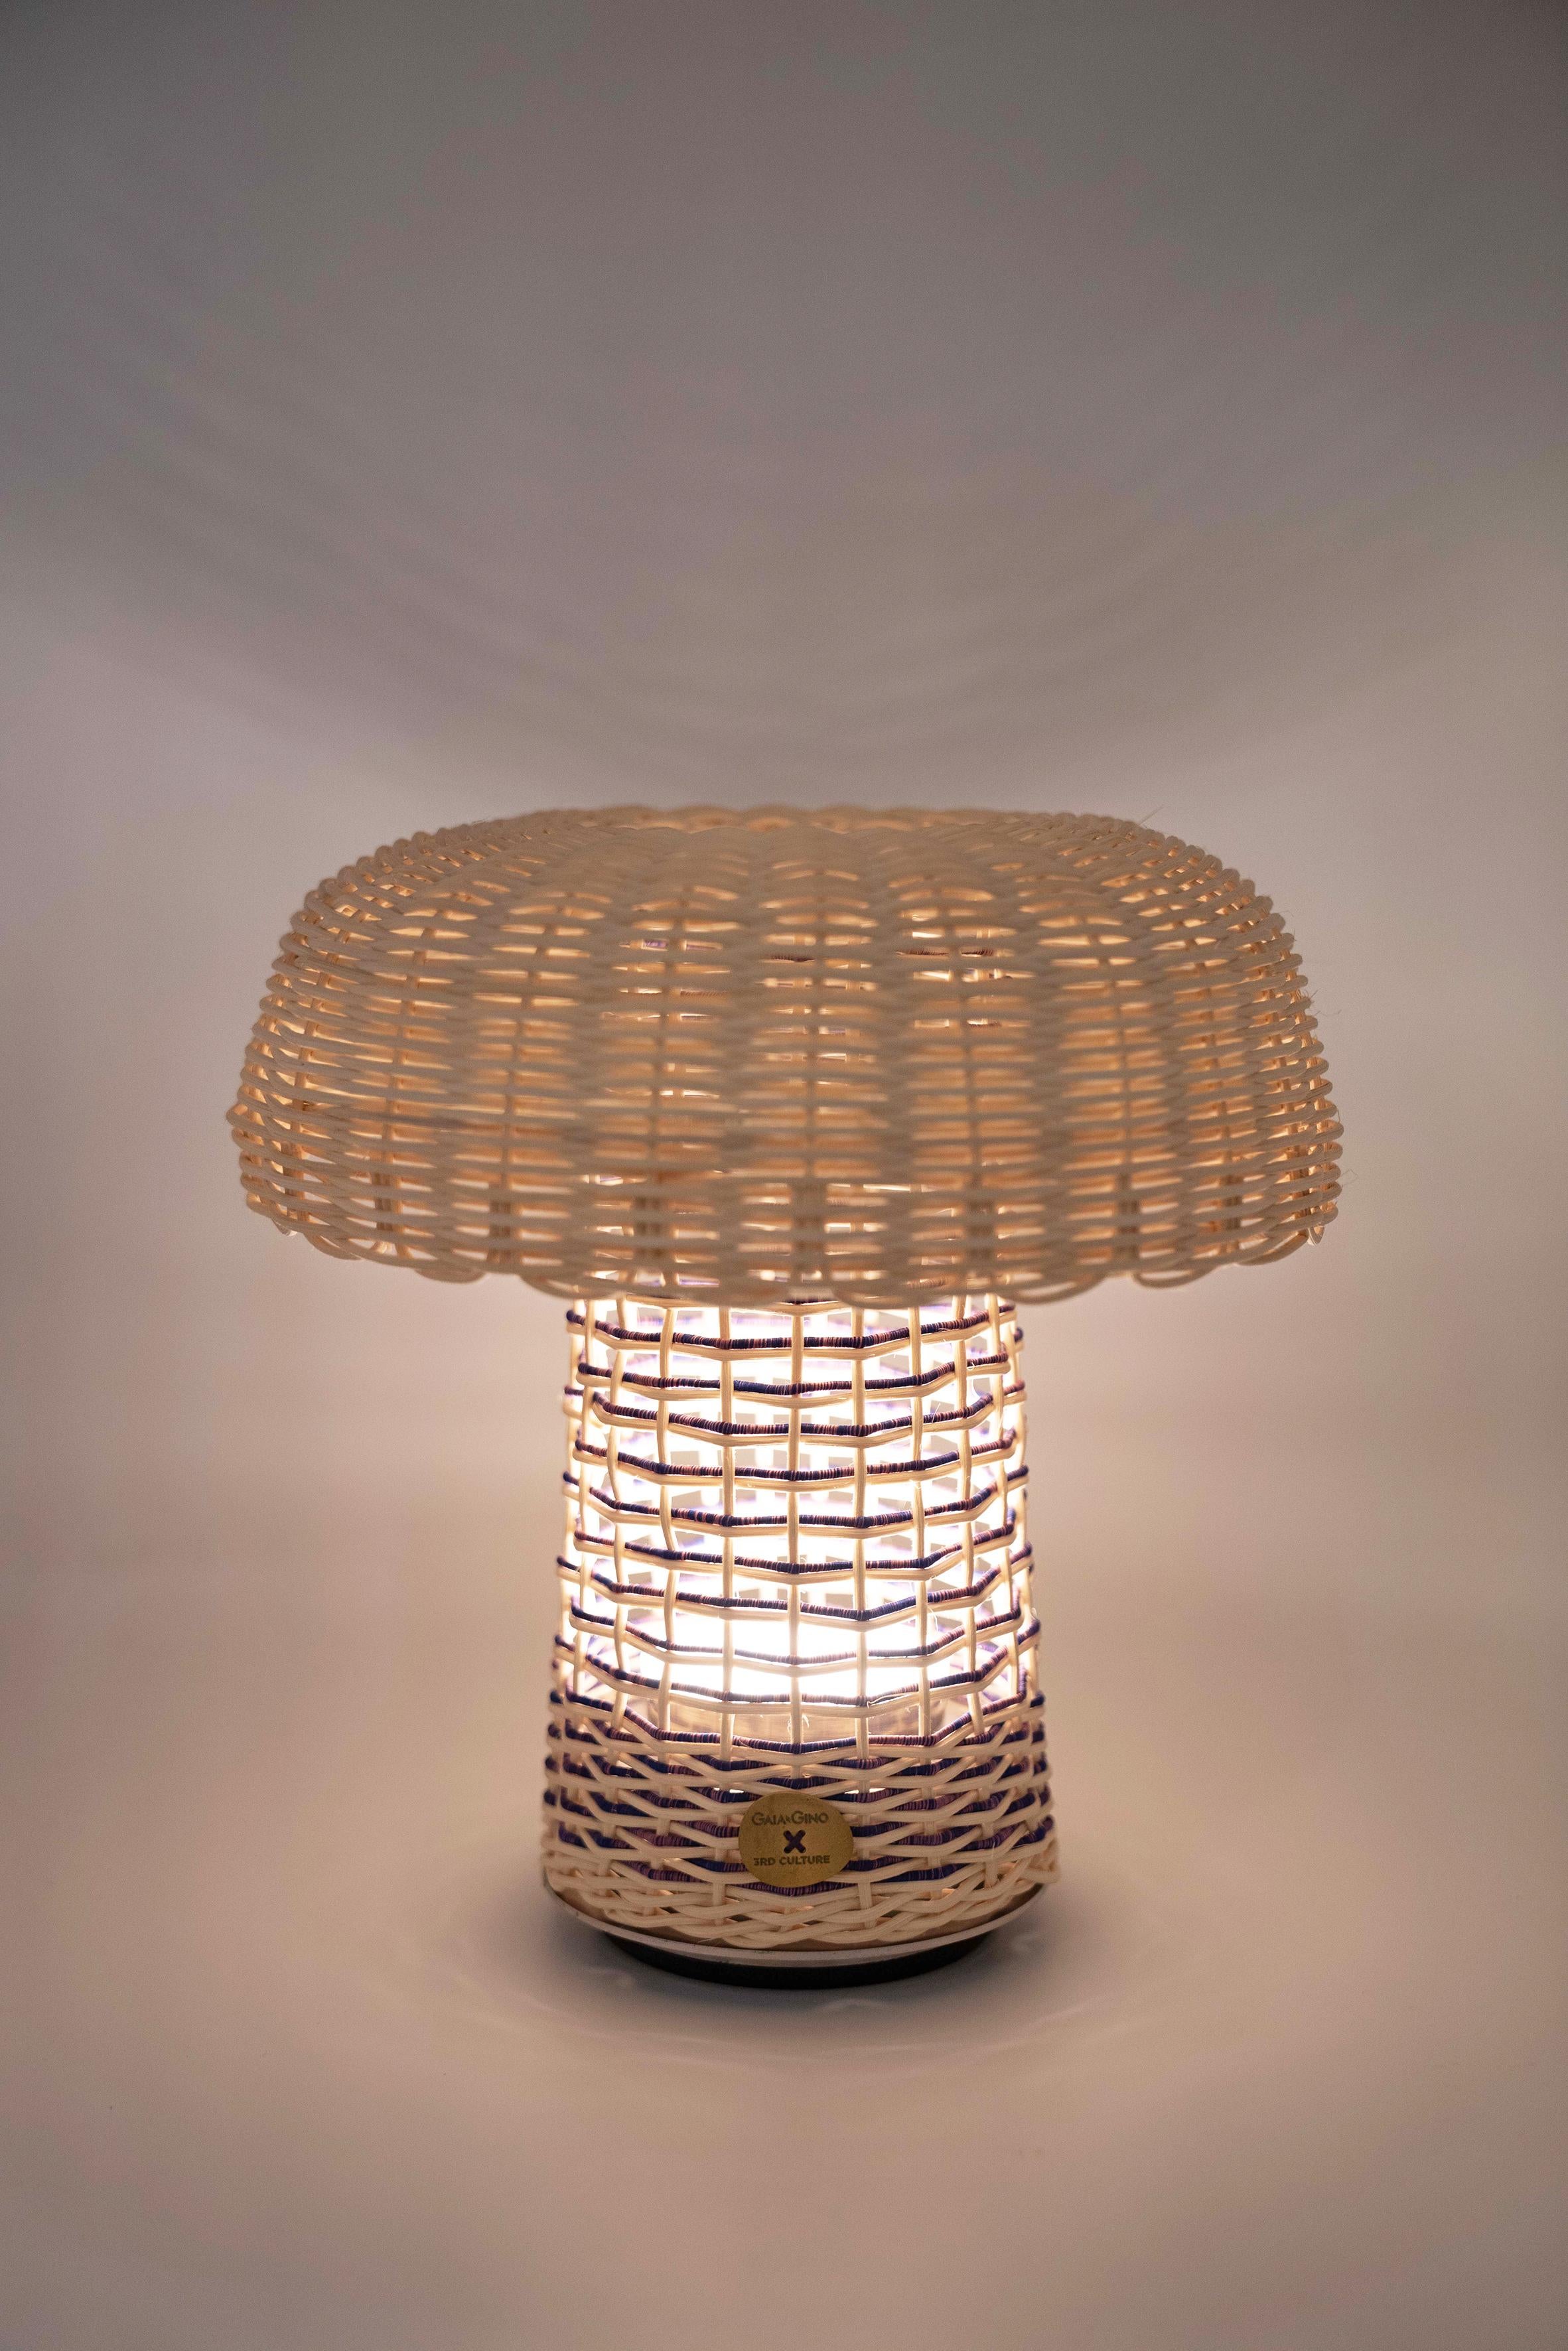 La lampe de table portable sans fil Fungi a été conçue par Doganberk Demir  pour GAIA&GINO x 3rd CULTURE et une partie de la collection Wonderland. 

La lampe de table sans fil Fungi déforme de manière innovante la vannerie traditionnelle pour créer